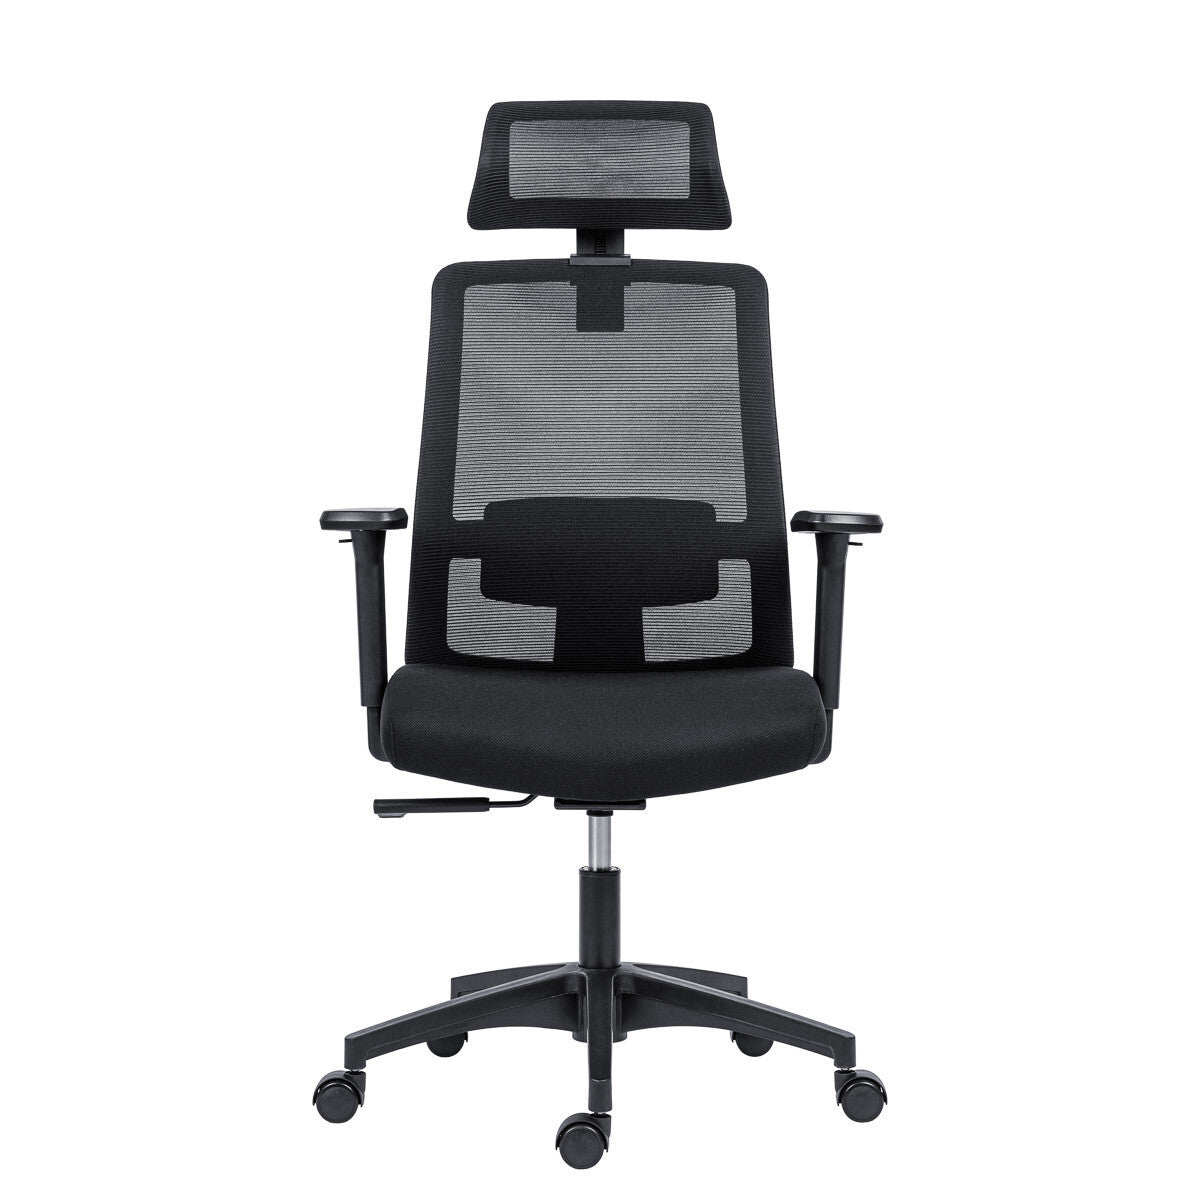 Kancelářská židle Antares Delfo, černá